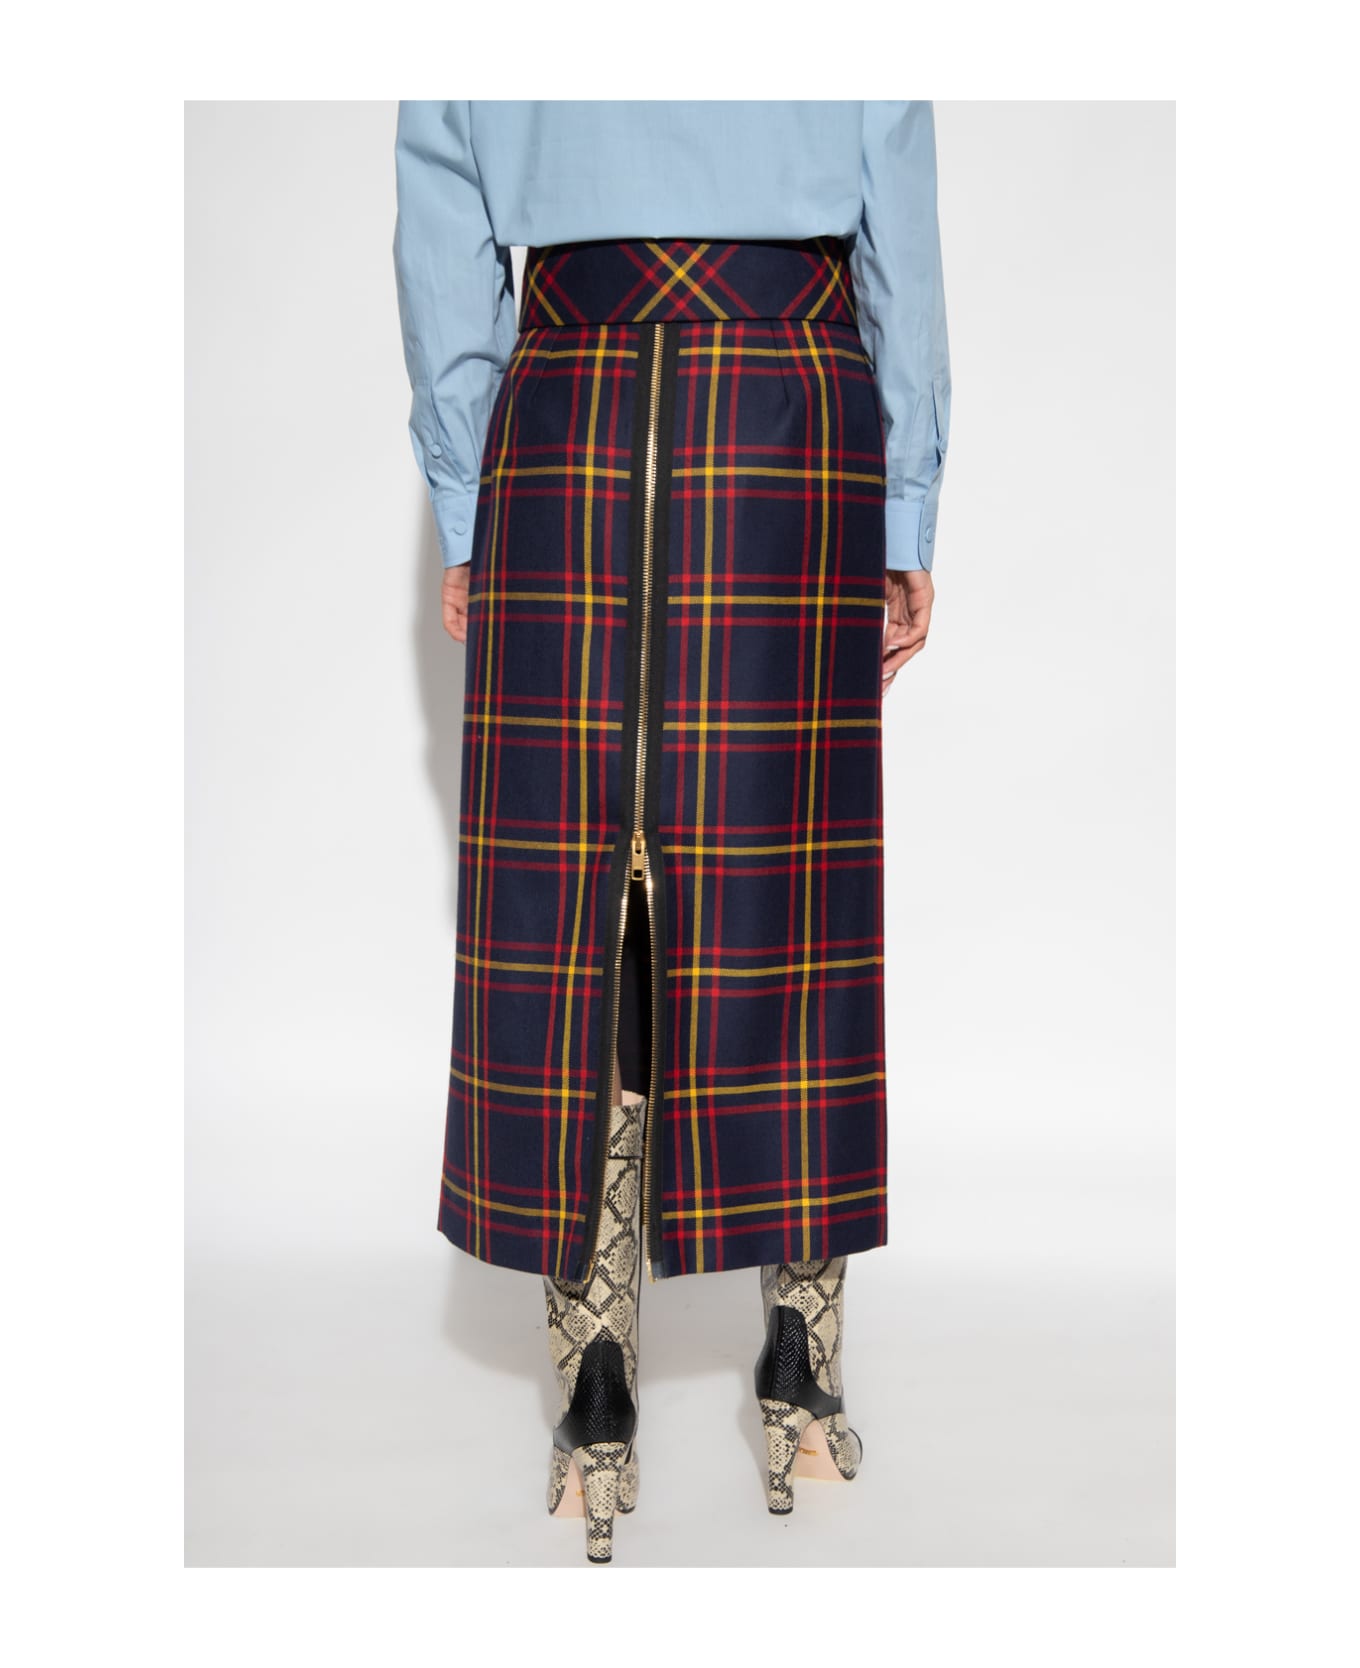 Gucci Tartan Wool Skirt